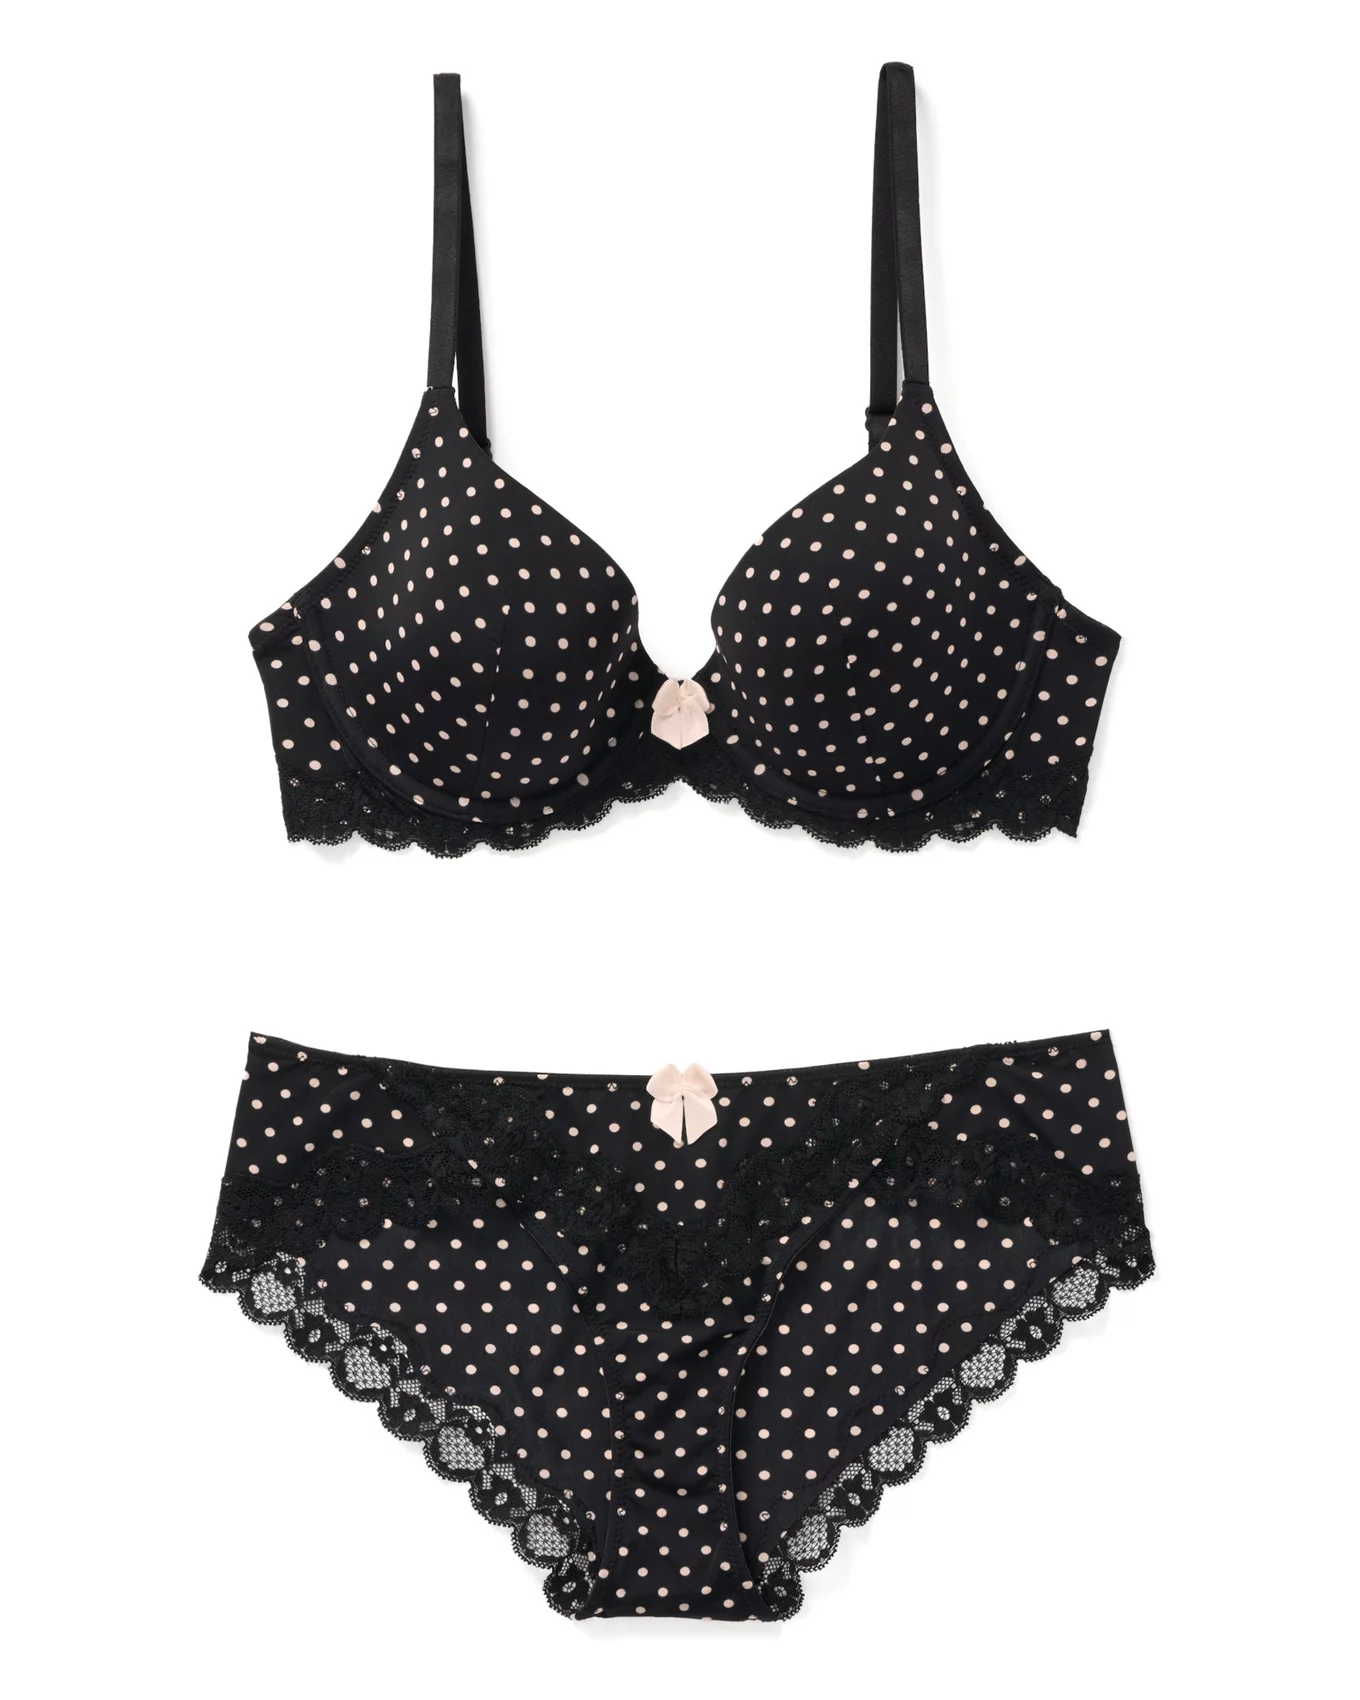 Buy online Black Nylon Bras And Panty Set from lingerie for Women